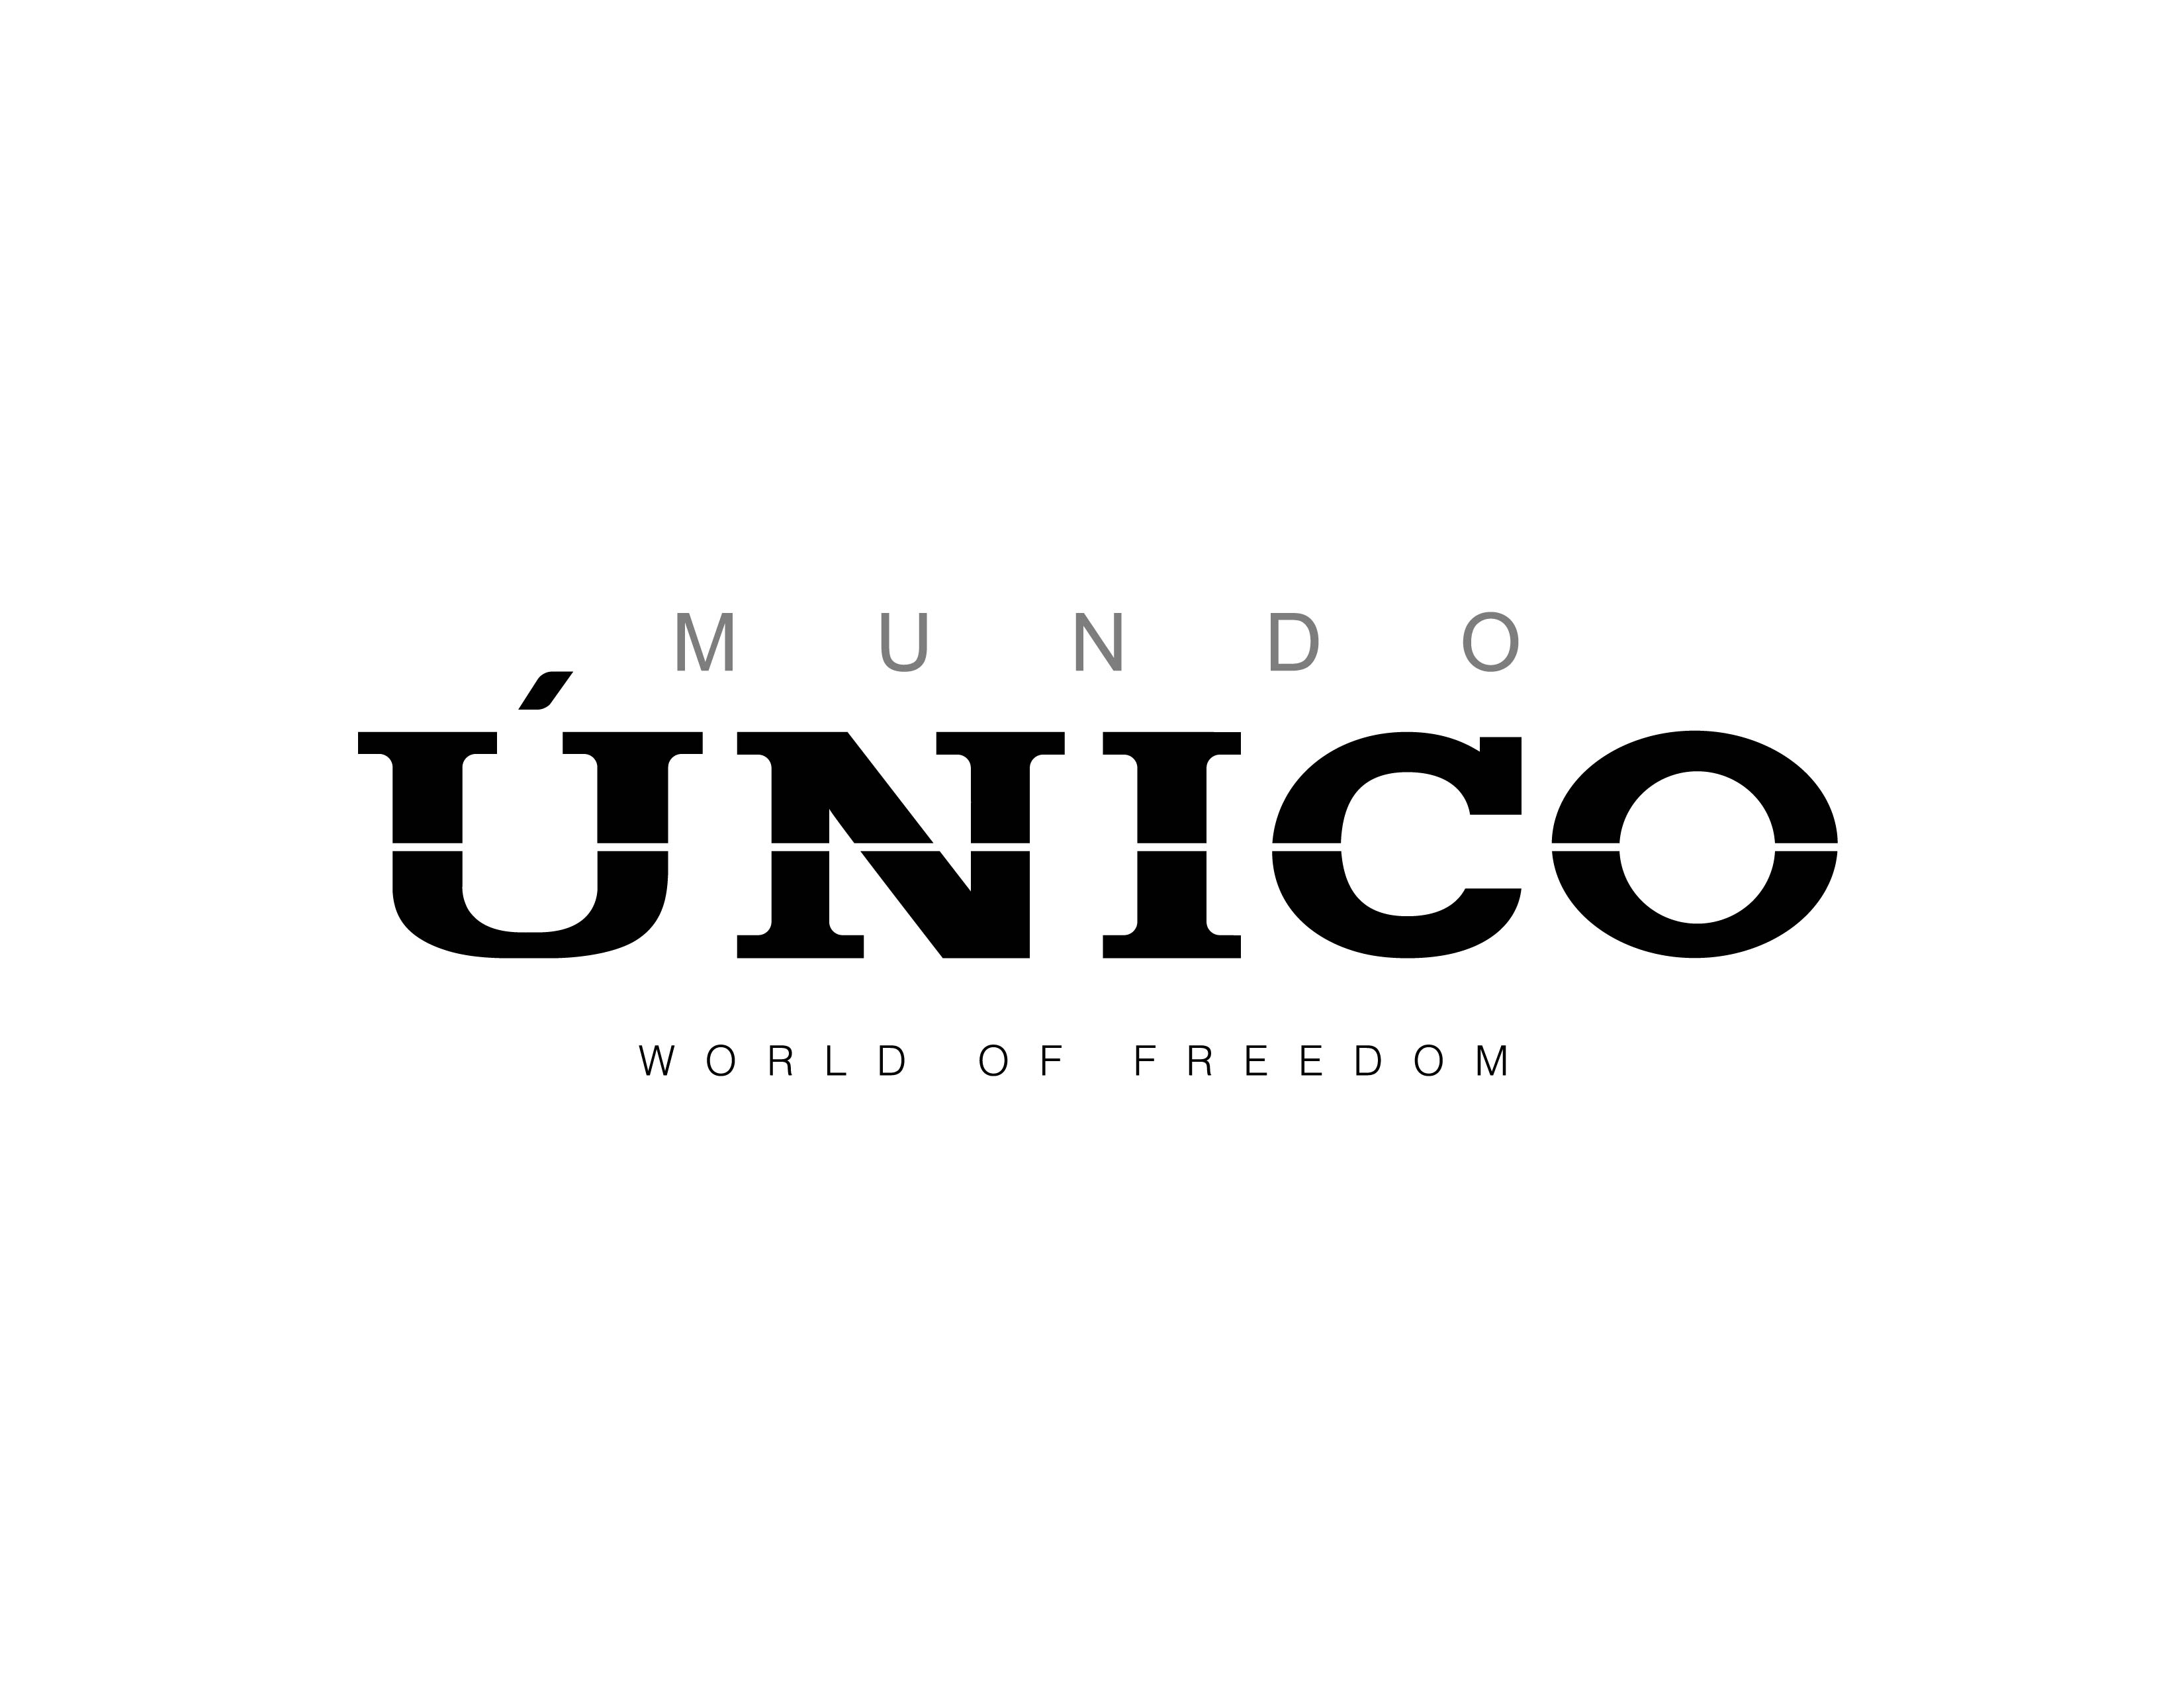 Unico logo